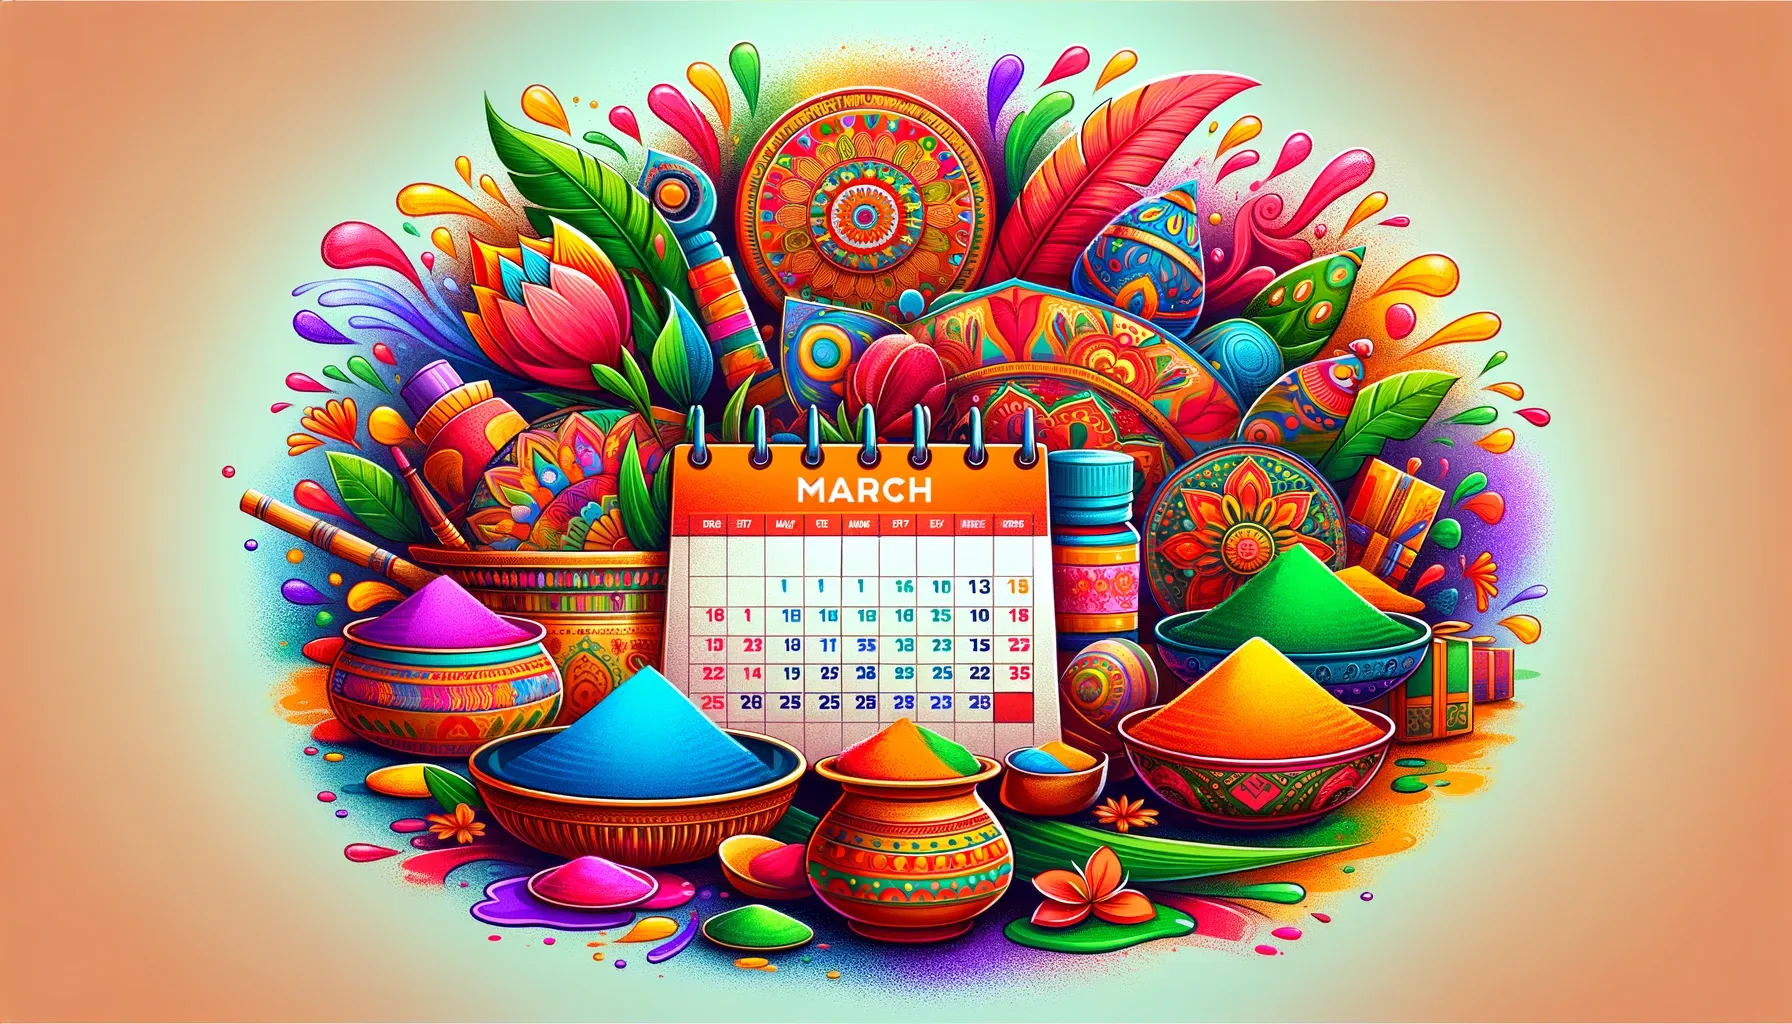 मार्च के भारतीय त्यौहार: रंगों, संस्कृति और पाककला के आनंद के माध्यम से एक यात्रा